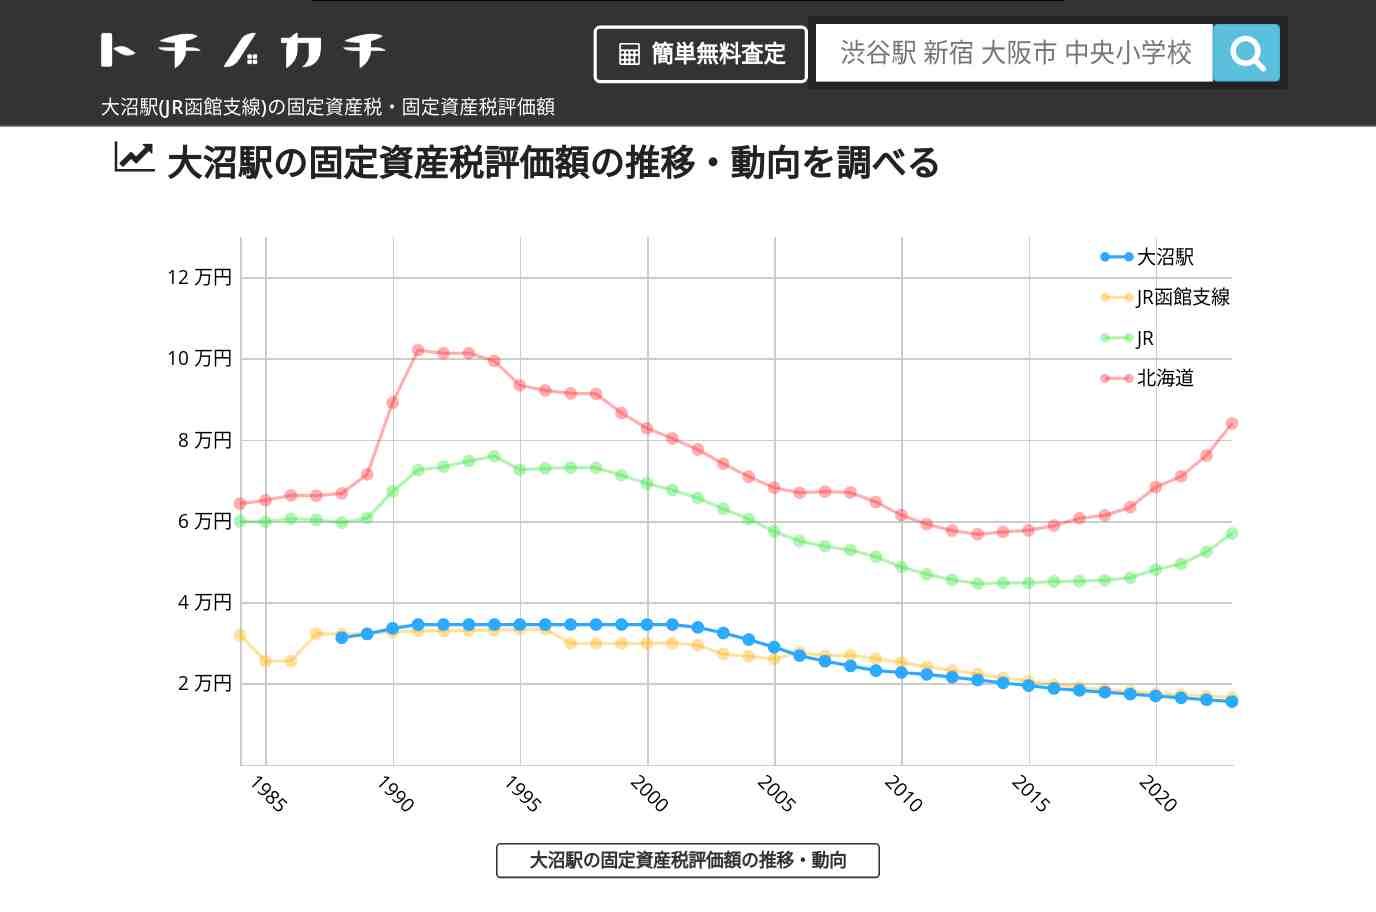 大沼駅(JR函館支線)の固定資産税・固定資産税評価額 | トチノカチ